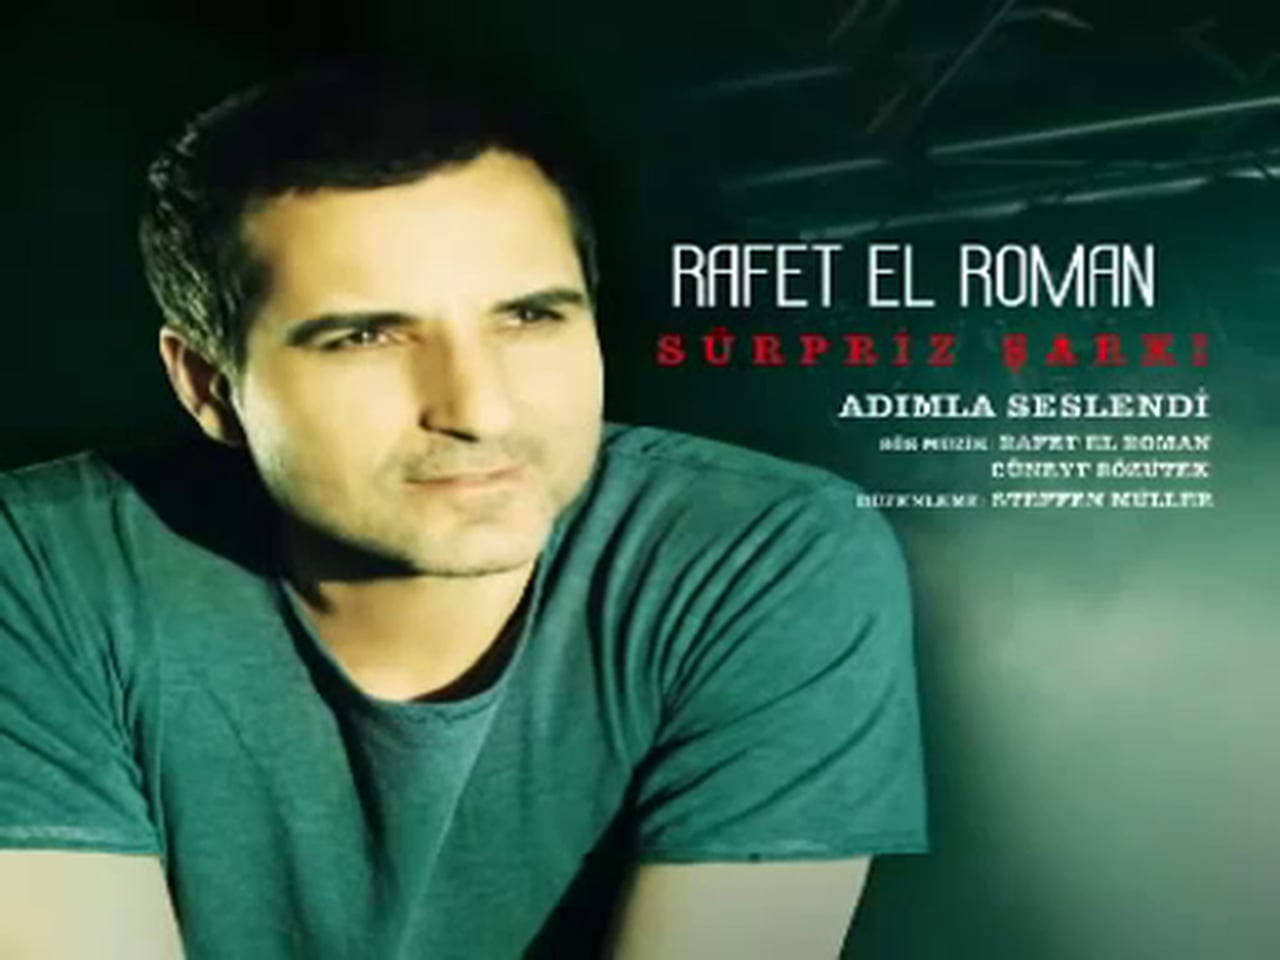 Rafet El Roman - Bugun anladim самая классная турецкая песня